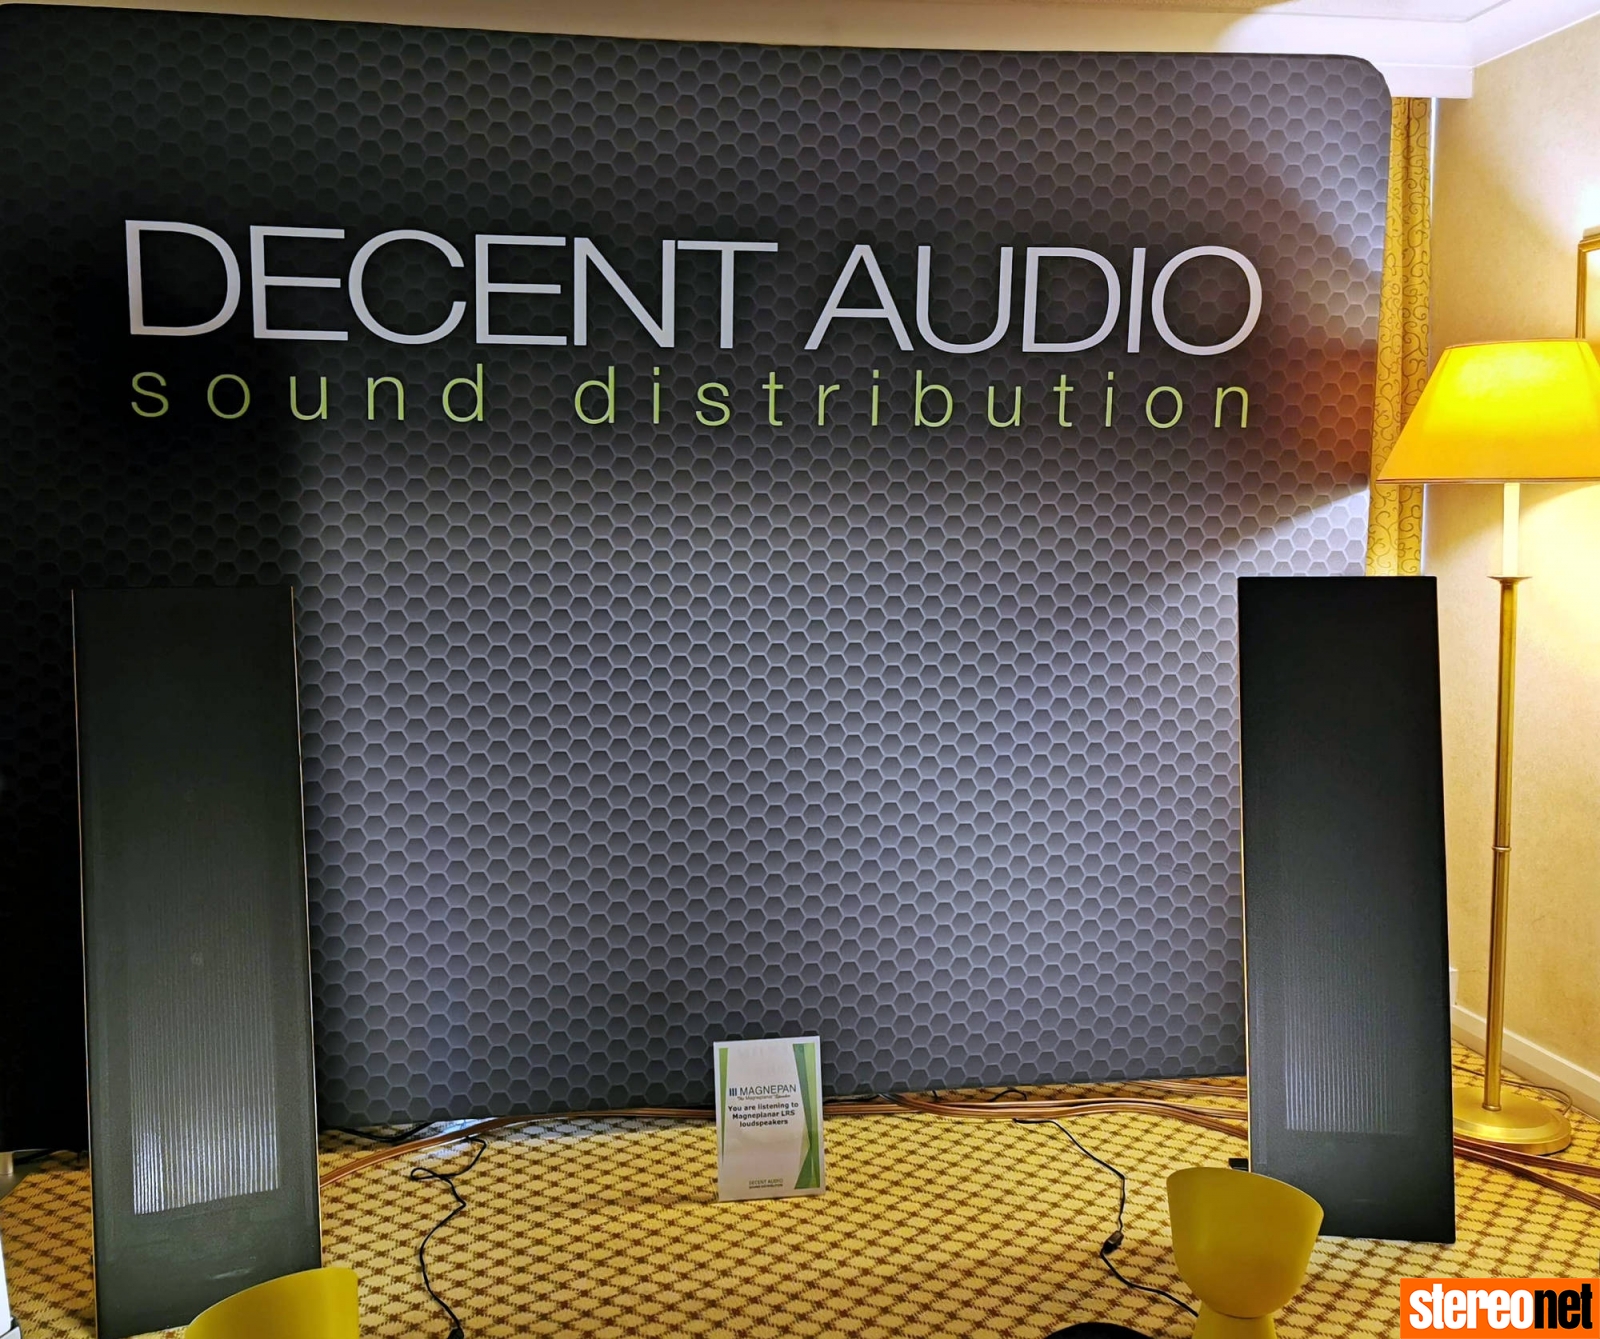 Decent Audio Magnepan Bristol hifi show 2020 report